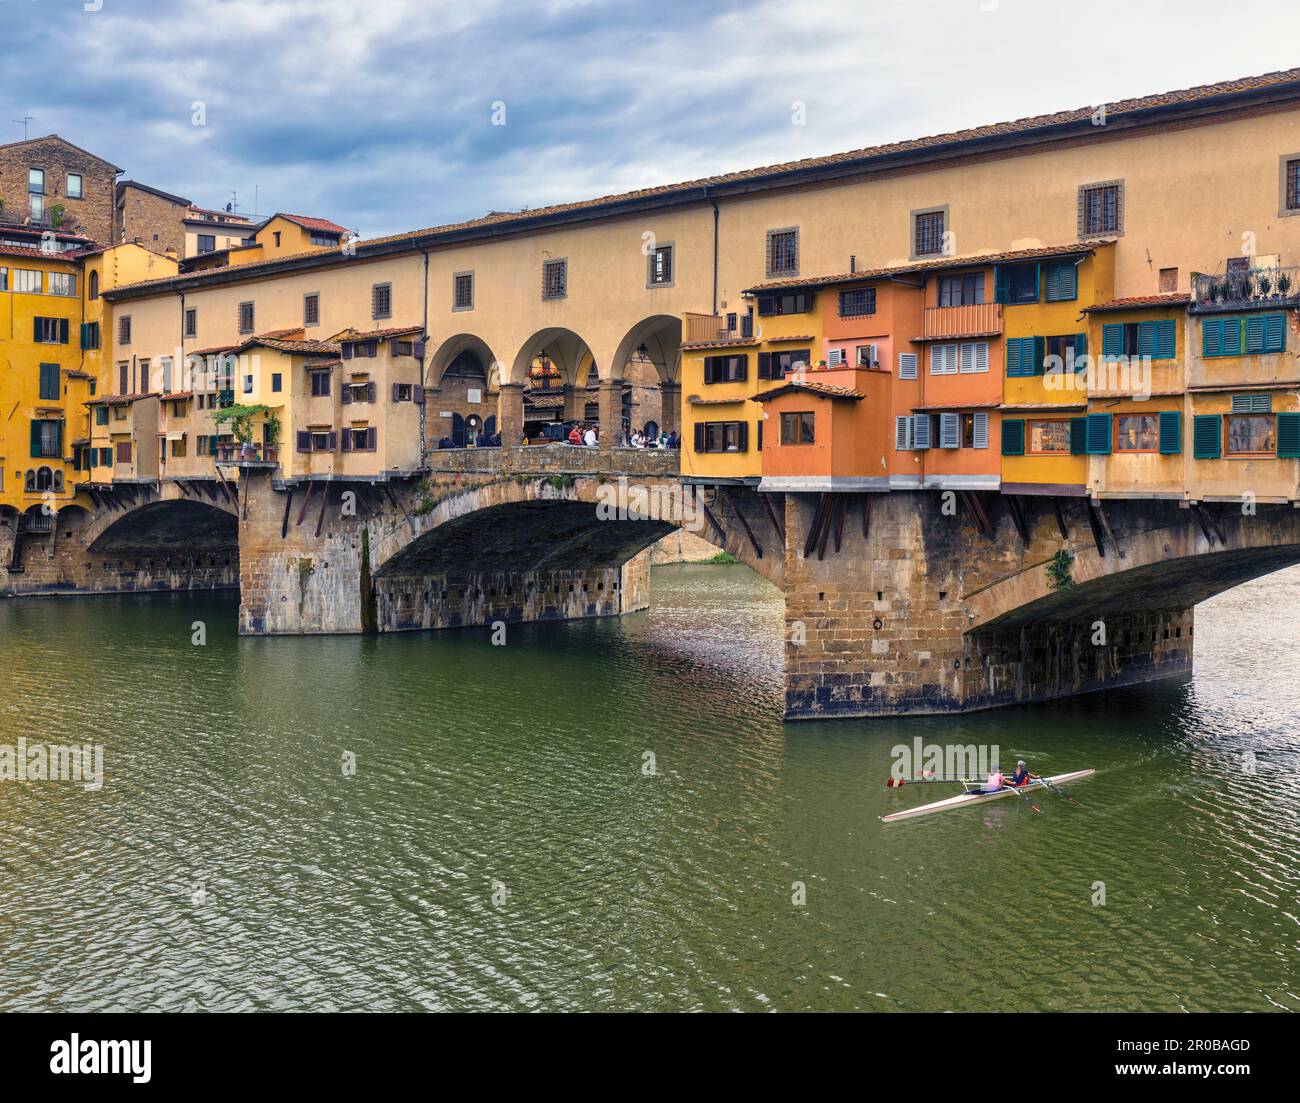 Die Ponte Vecchio, die alte Brücke, am Fluss Arno und die Doppel-Scullers. Florenz, Toskana, Italien. Das historische Zentrum von Florenz gehört zum UNESCO-Weltkulturerbe Stockfoto